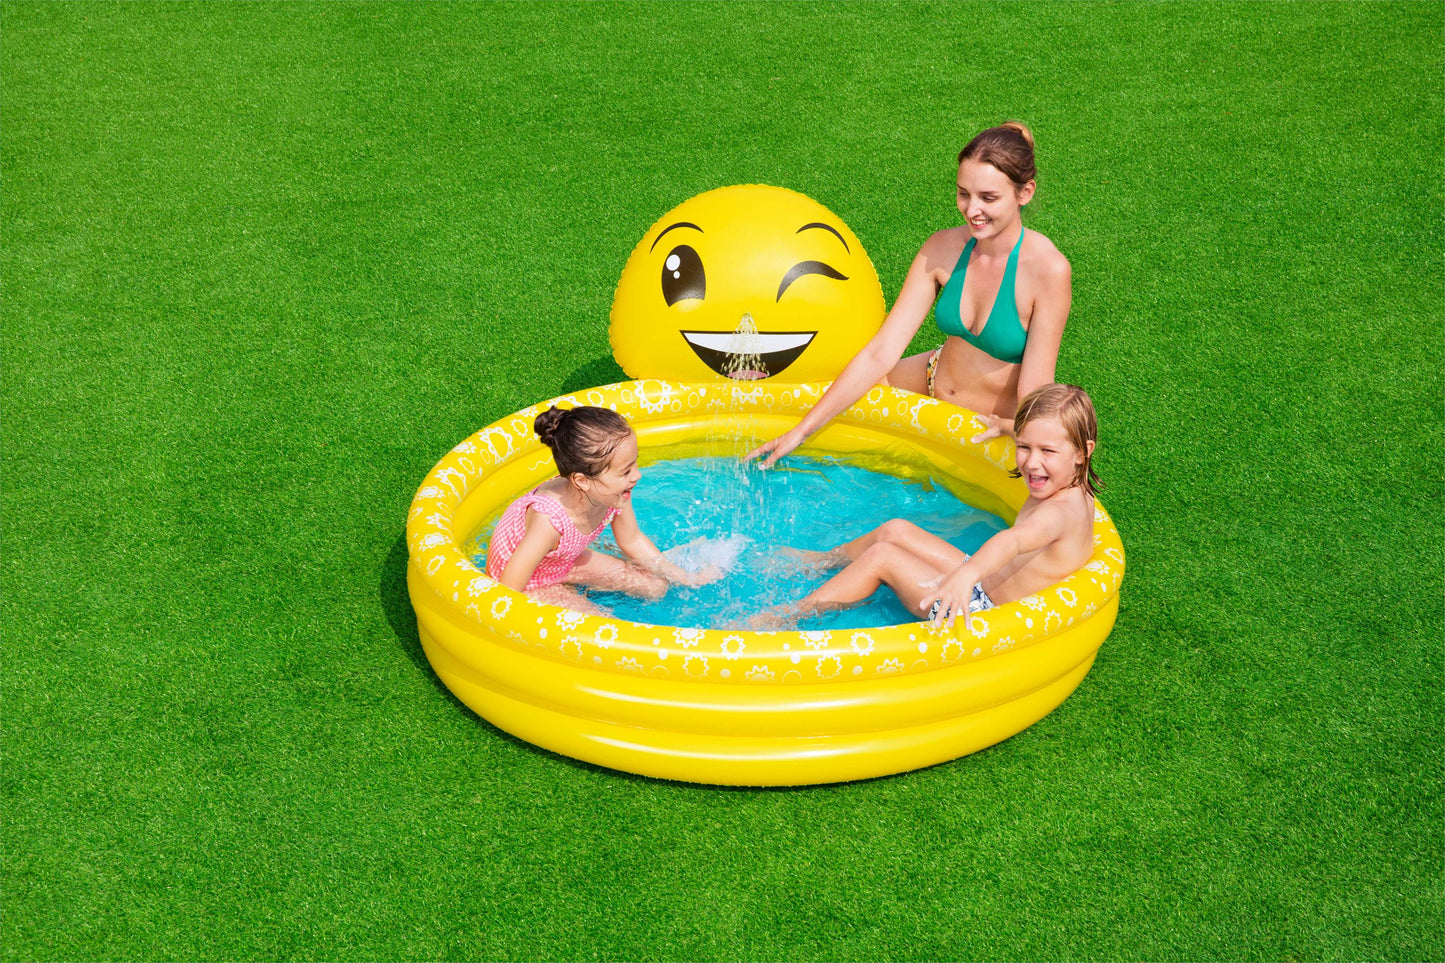 Smile design pool with water sprayer Bestway Summer Smiles Sprayer Pool